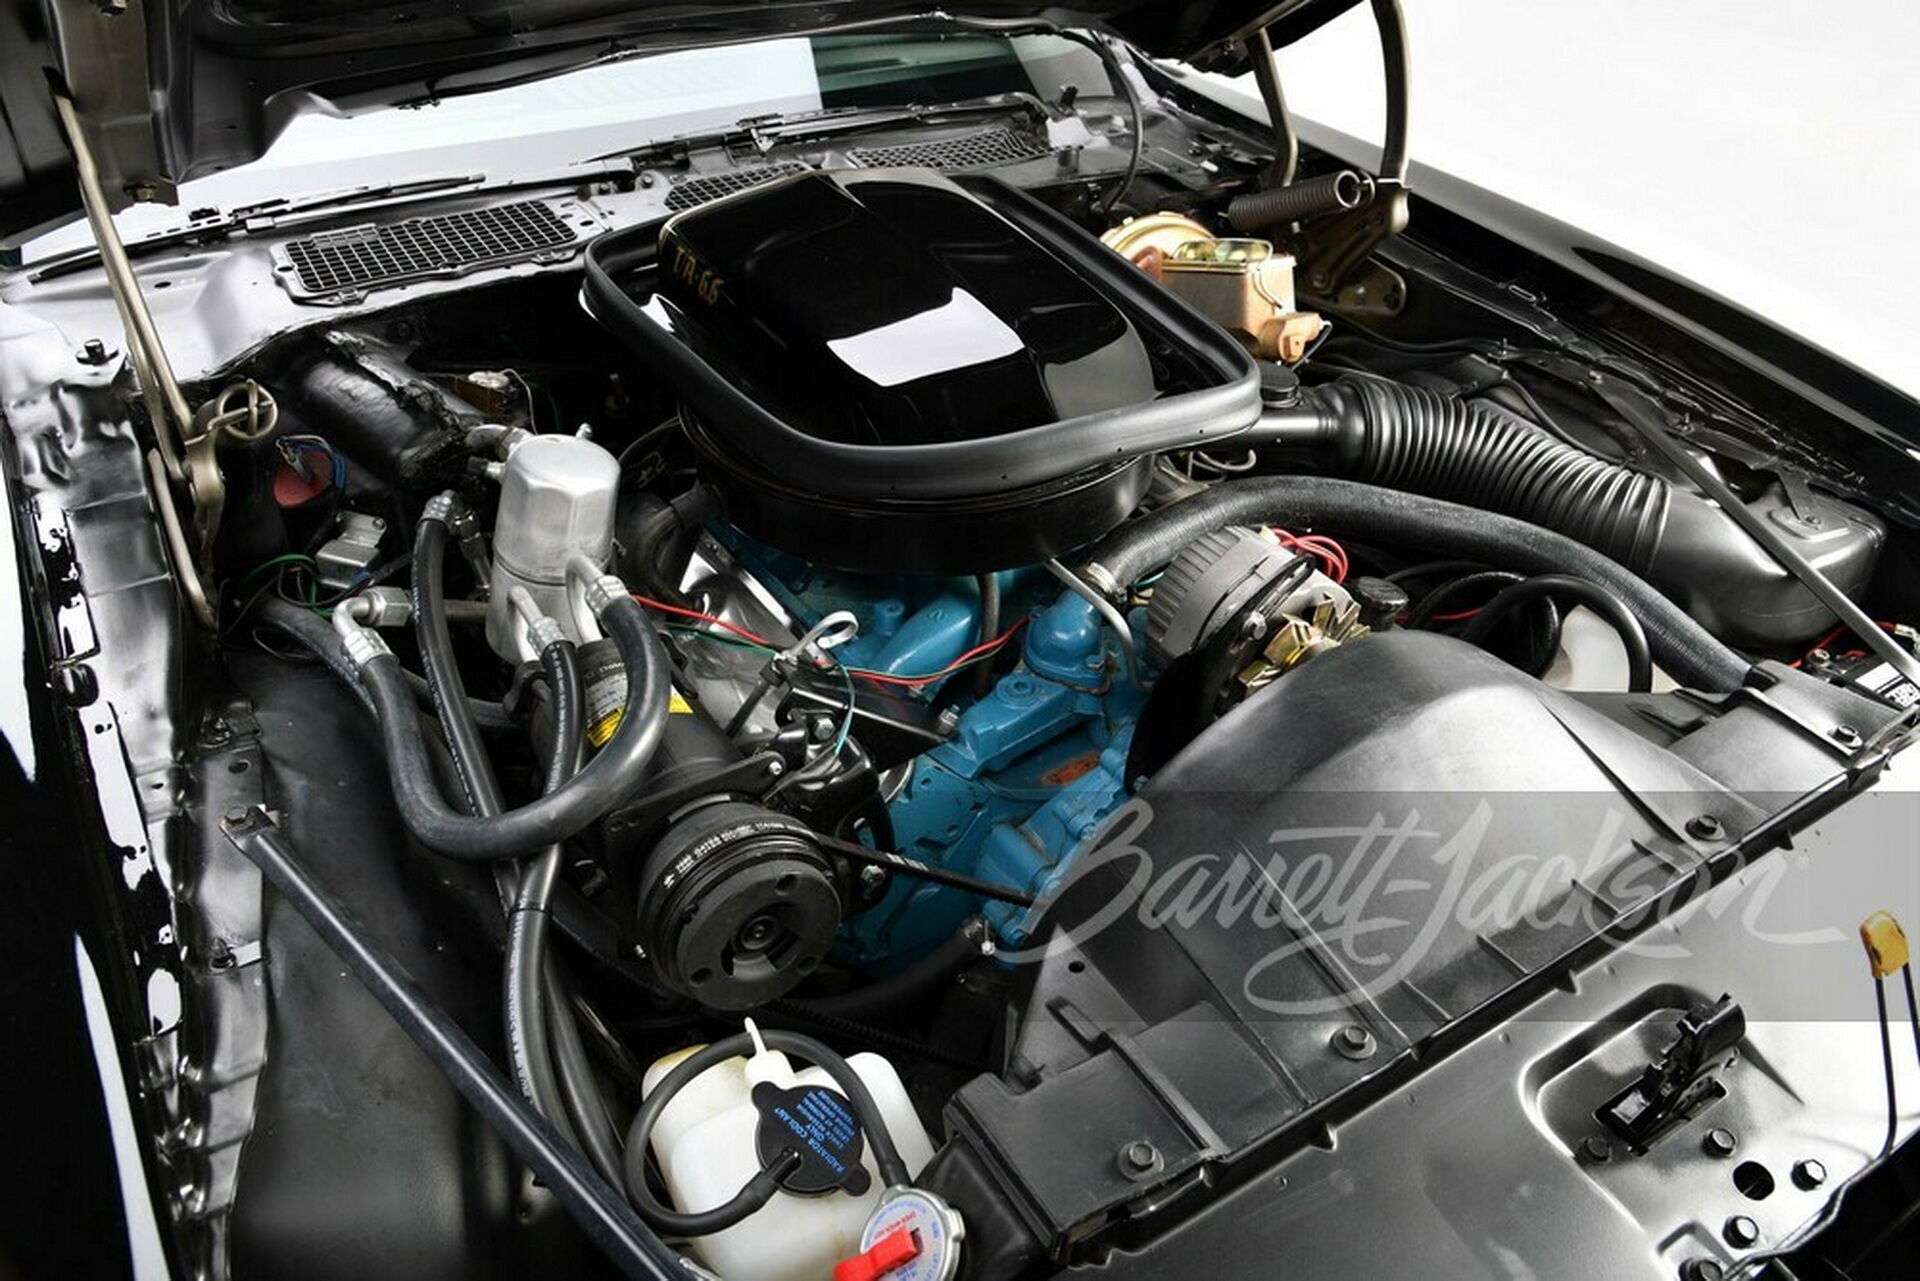 Під капотом машини розташовується 6,6-літровий двигун Pontiac V8, який розвиває потужність 182 к.с.